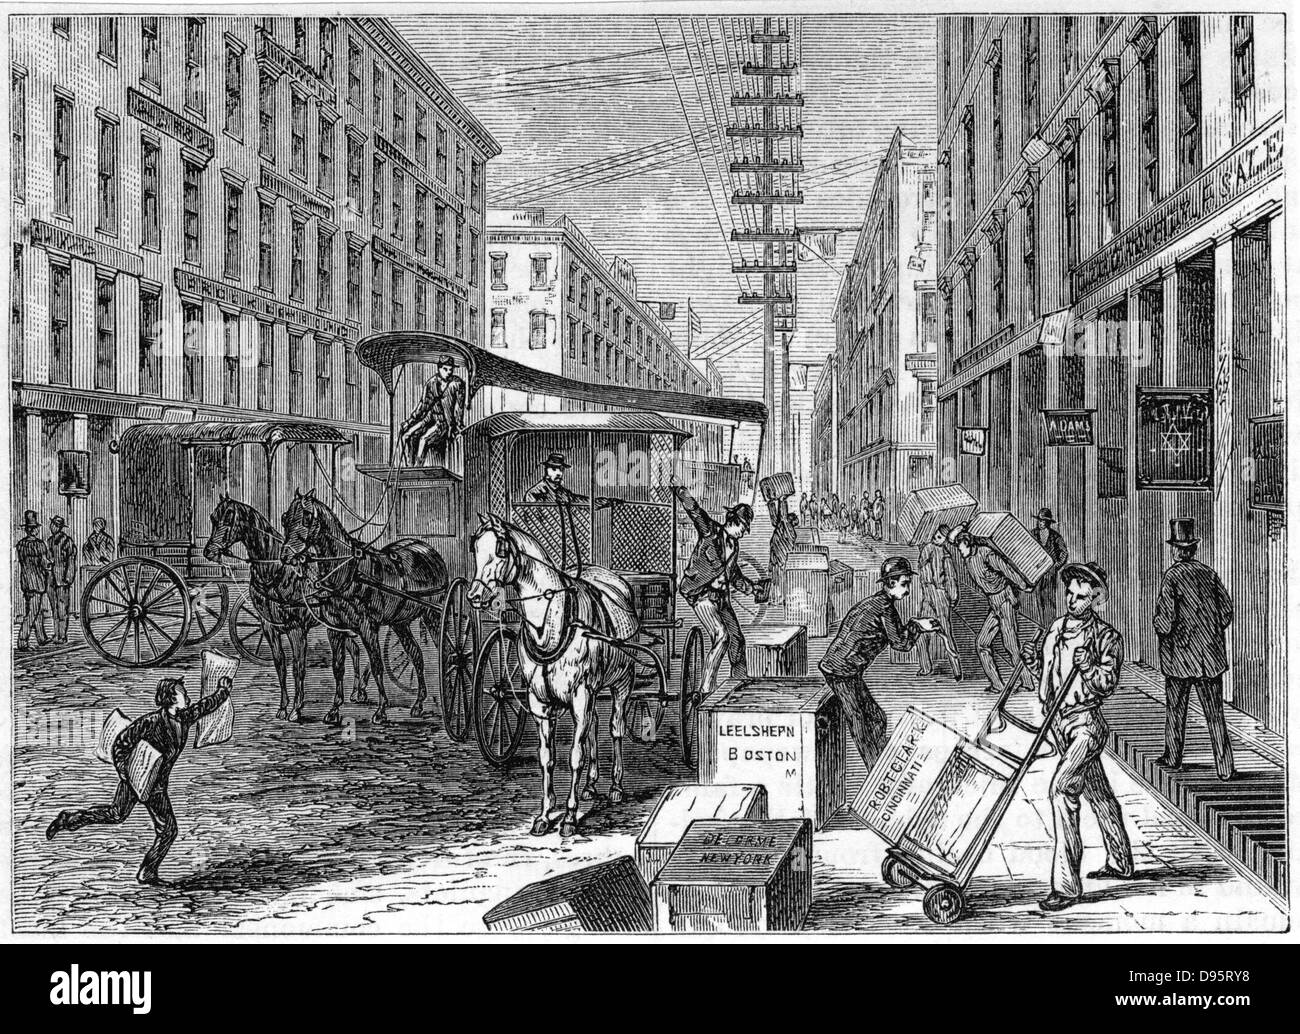 Entregas y recogidas tomando lugar en Wells Fargo depot, Nueva York. Desde 'Harper's New Monthly Magazine' Nueva York 1875. Grabado en madera Foto de stock